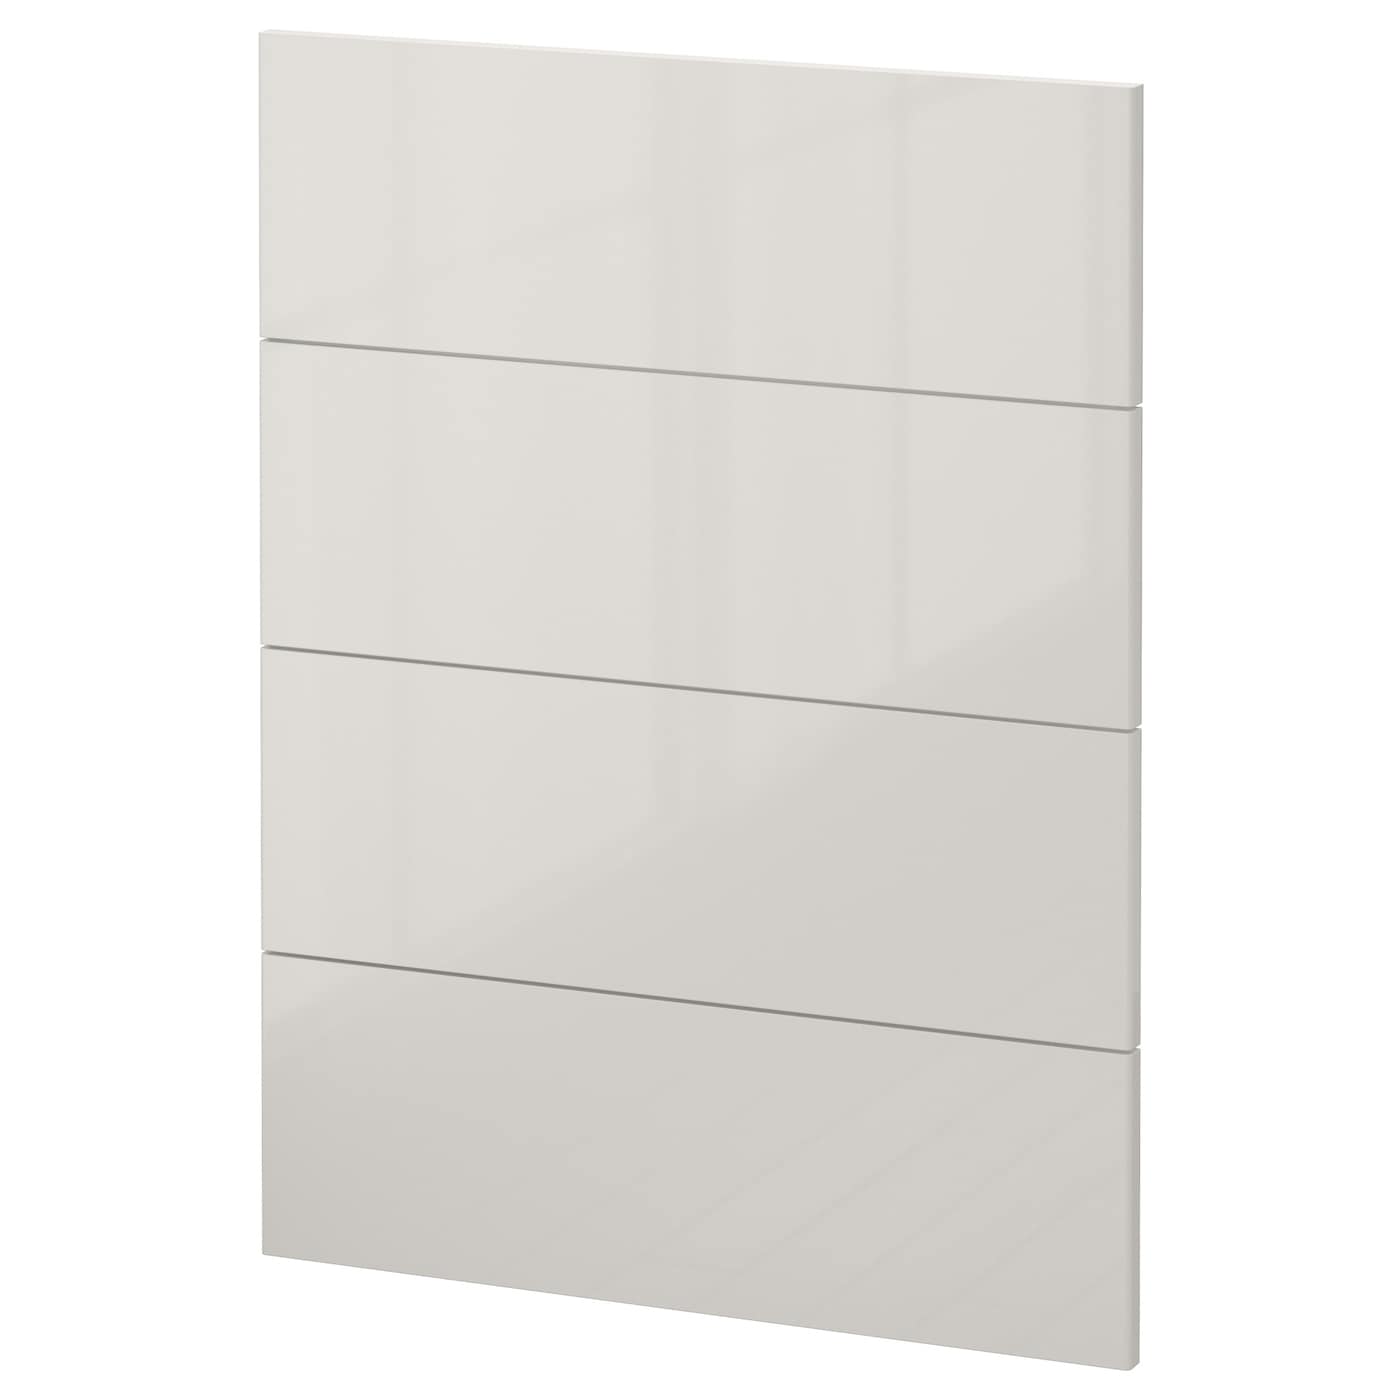 Накладная панель для посудомоечной машины - IKEA METOD, 80х60 см, светло-серый, МЕТОД ИКЕА